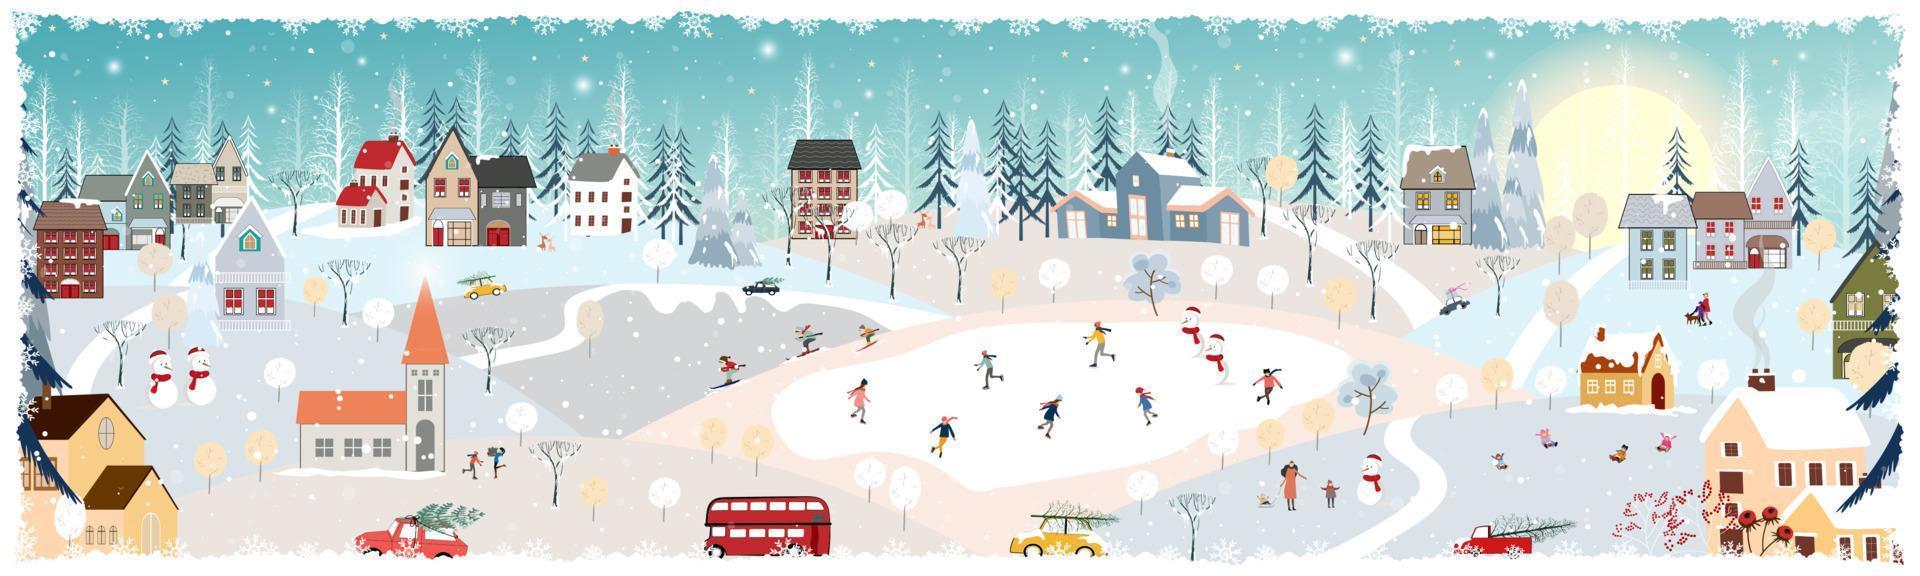 paisaje invernal, celebrando la navidad y el año nuevo en el pueblo por la noche con un feliz oso polar jugando a patinar sobre hielo en el parque, vector de pancarta horizontal del país de las maravillas invernal en el campo